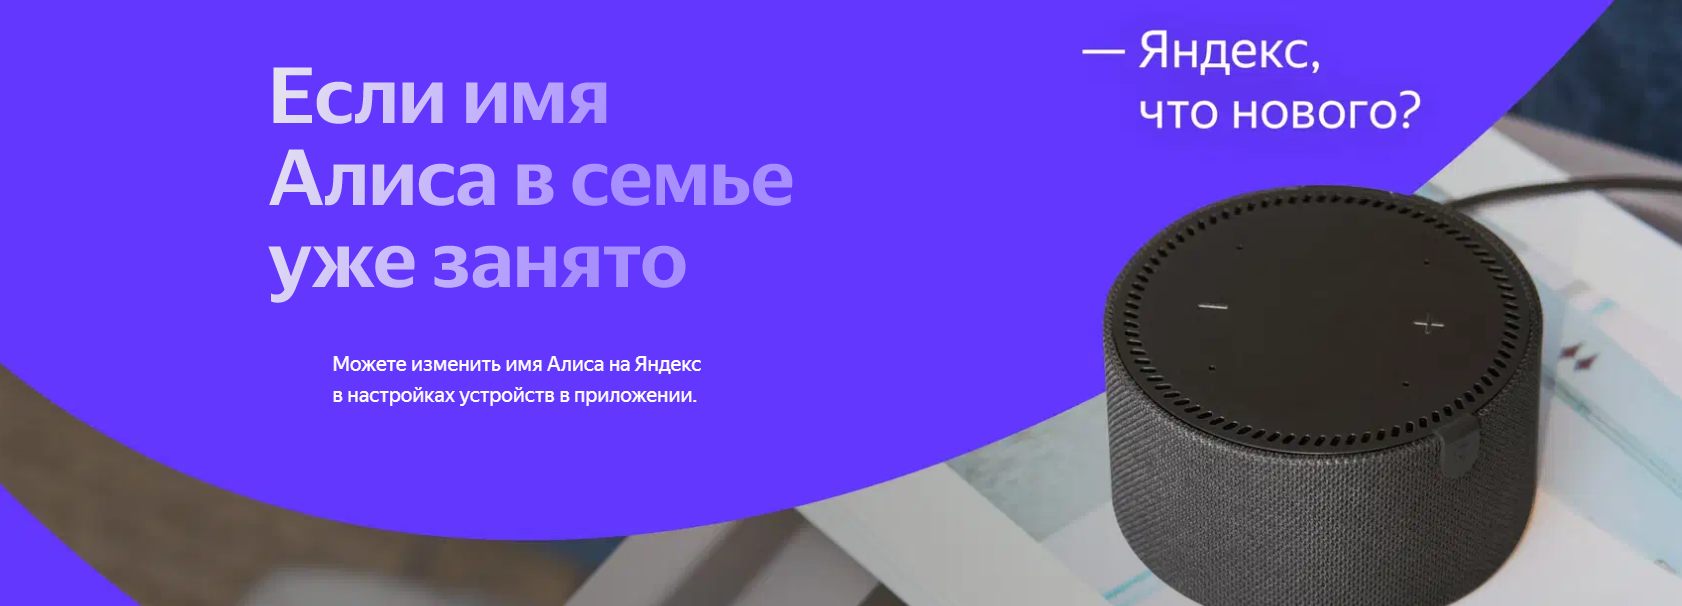 Акустическая система Yandex Яндекс.Станция Мини Плюс Синяя YNDX-00020 с часами (Умная колонка с голосовым помощником)